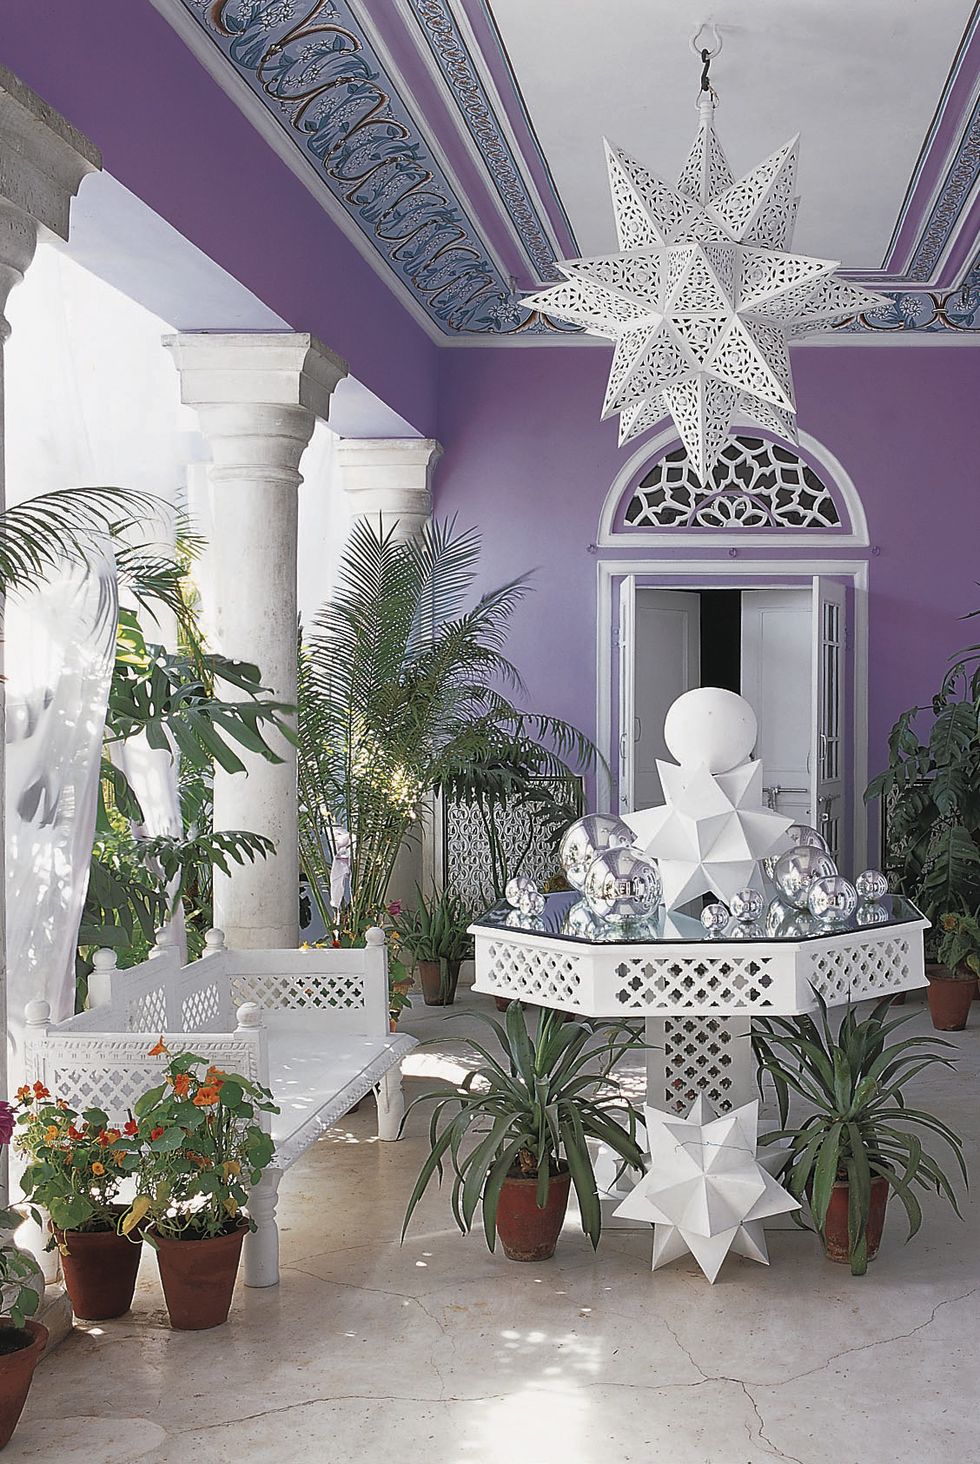 Không gian sống của vợ chồng nhà thiết kế thời trang với khoảng sân sau tuyệt đẹp. Nền tường màu tím sang trọng với những chi tiết nội thất màu trắng tinh tế, lấp lánh cùng đường nét sắc sảo theo phong cách hoàng gia.